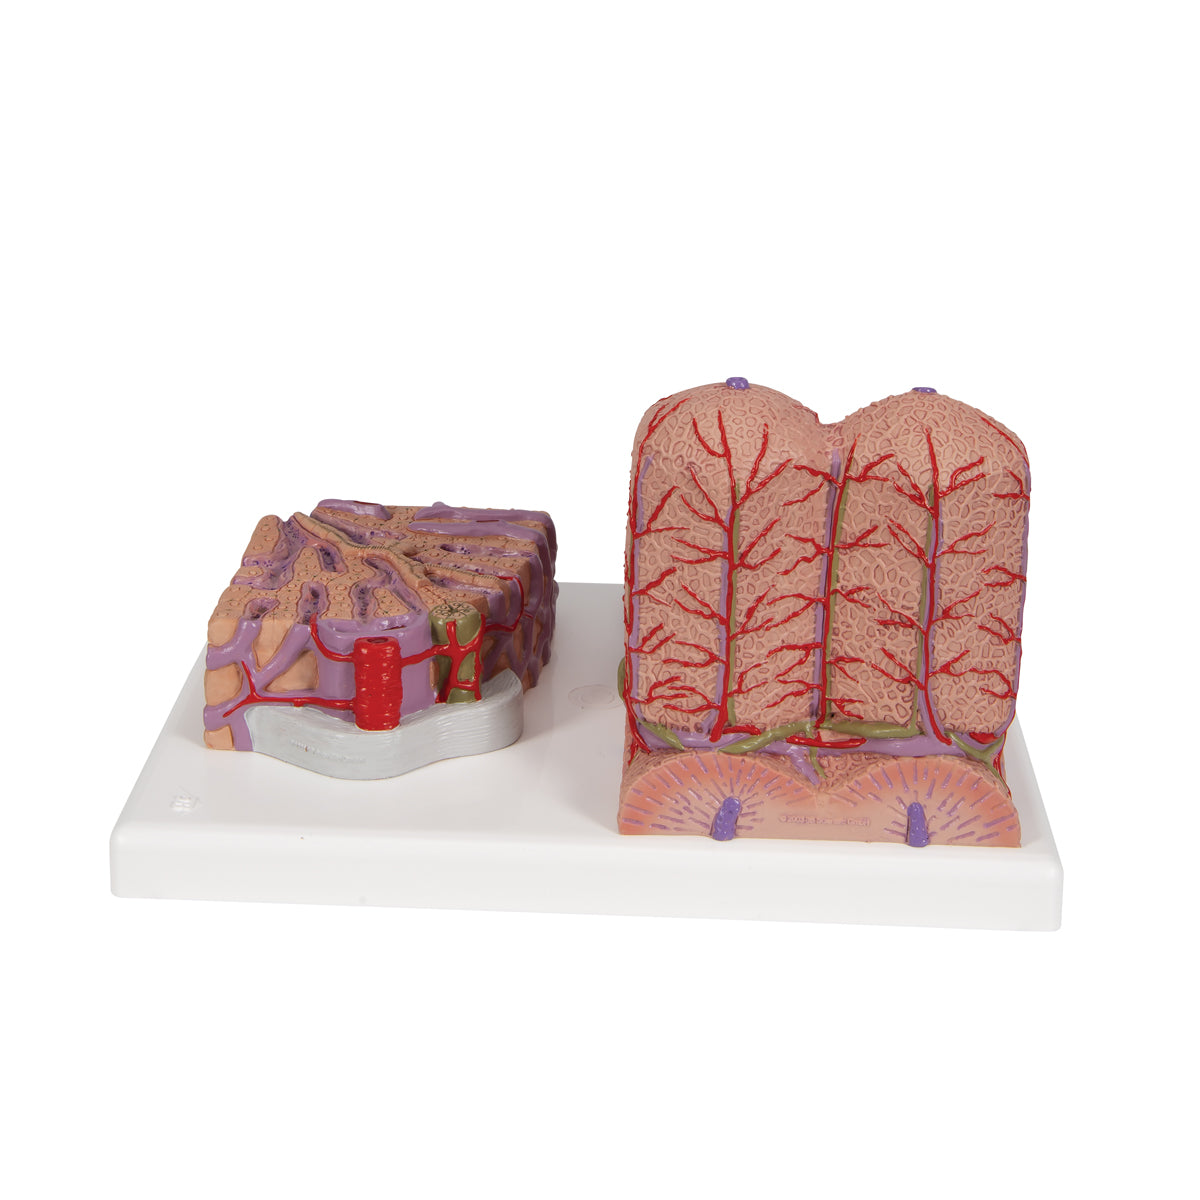 Detaljerad modell av levervävnaden och blodkärlen i ett mikroskopiskt perspektiv